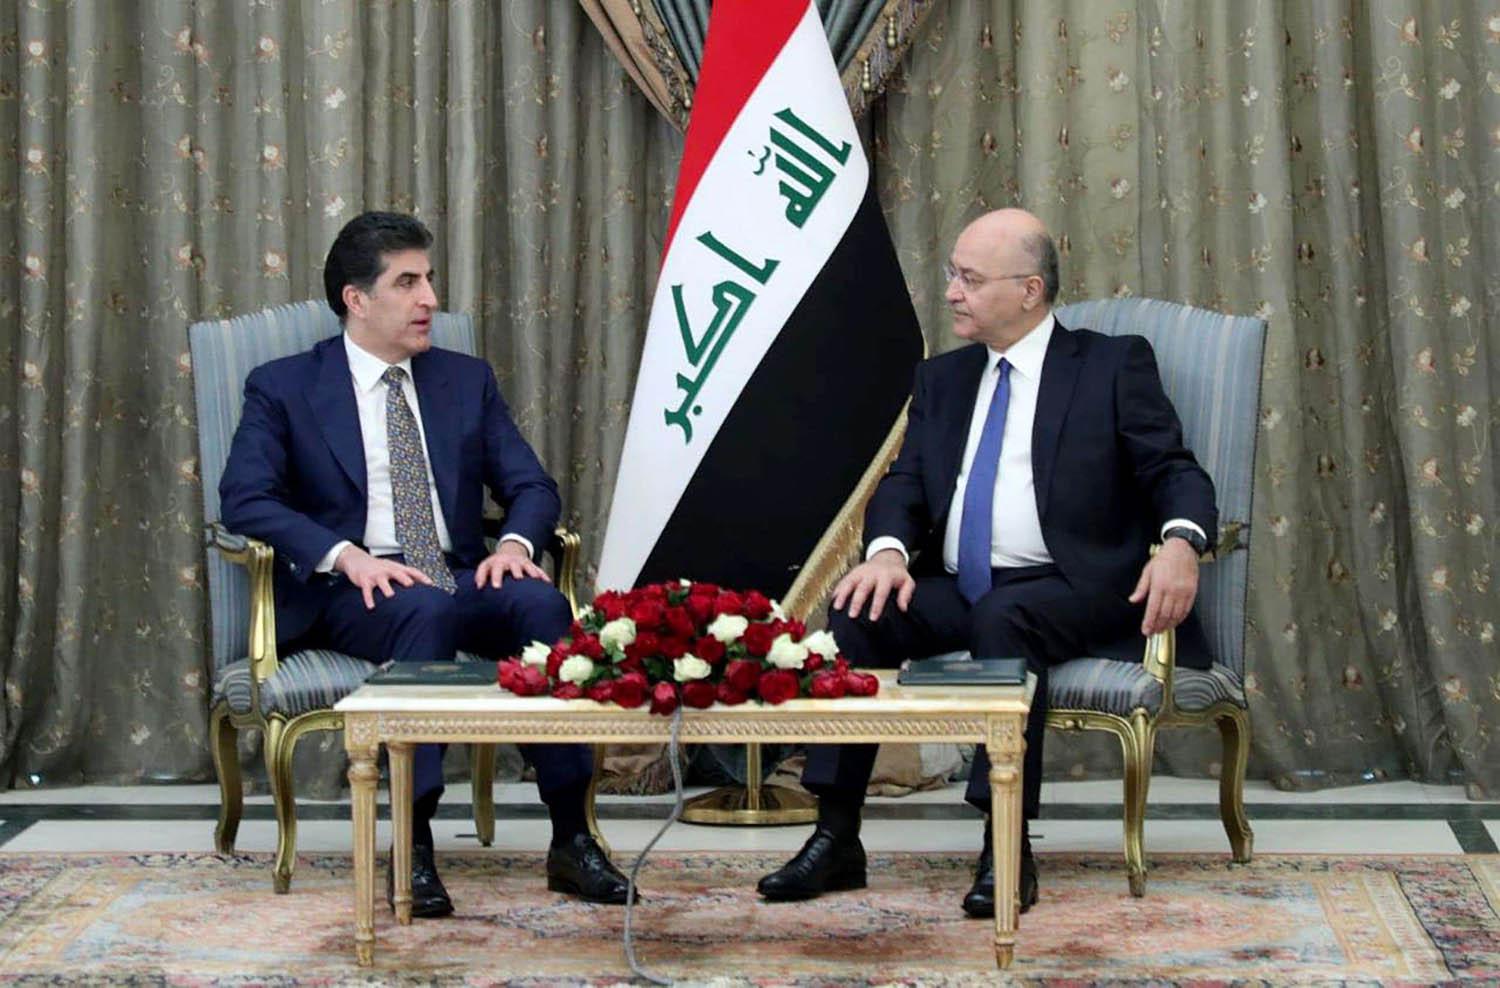 الرئيس العراقي برهم صالح يستقبل رئيس اقليم كردستان نيجيرفان بارزاني